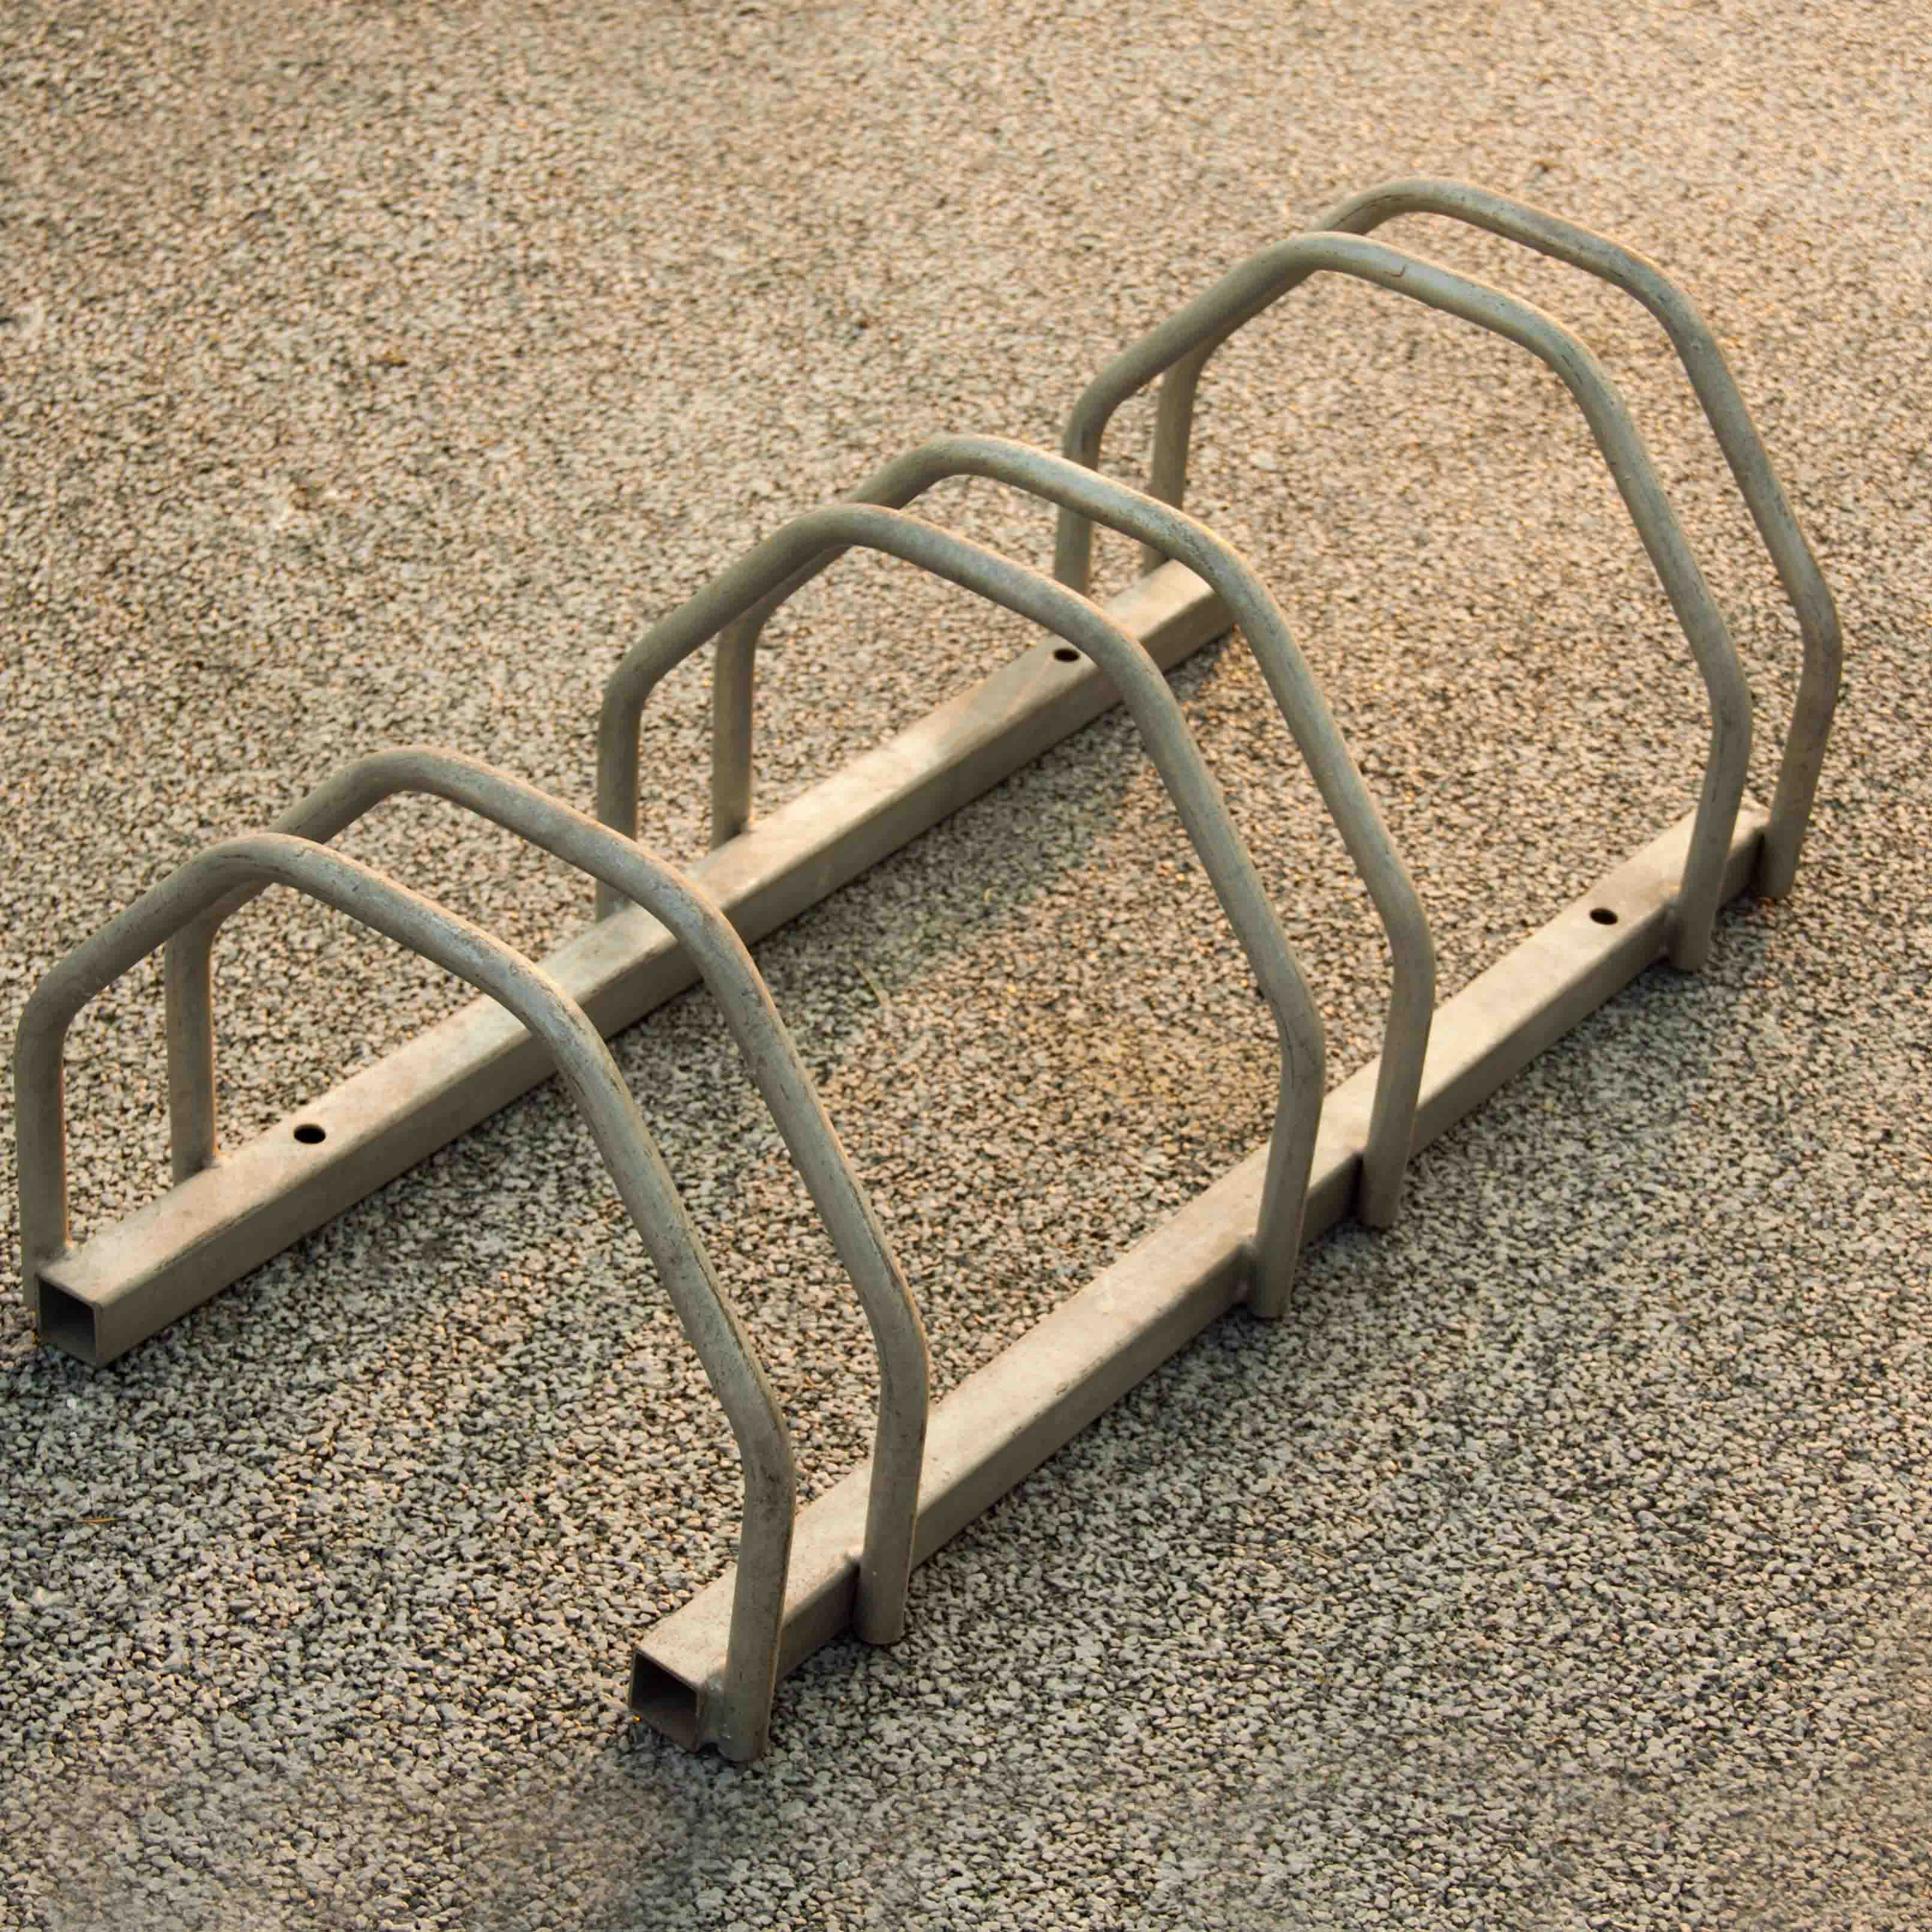 Soporte de piso Soporte de cuerpo de bicicleta duradero industrial de acero al carbono